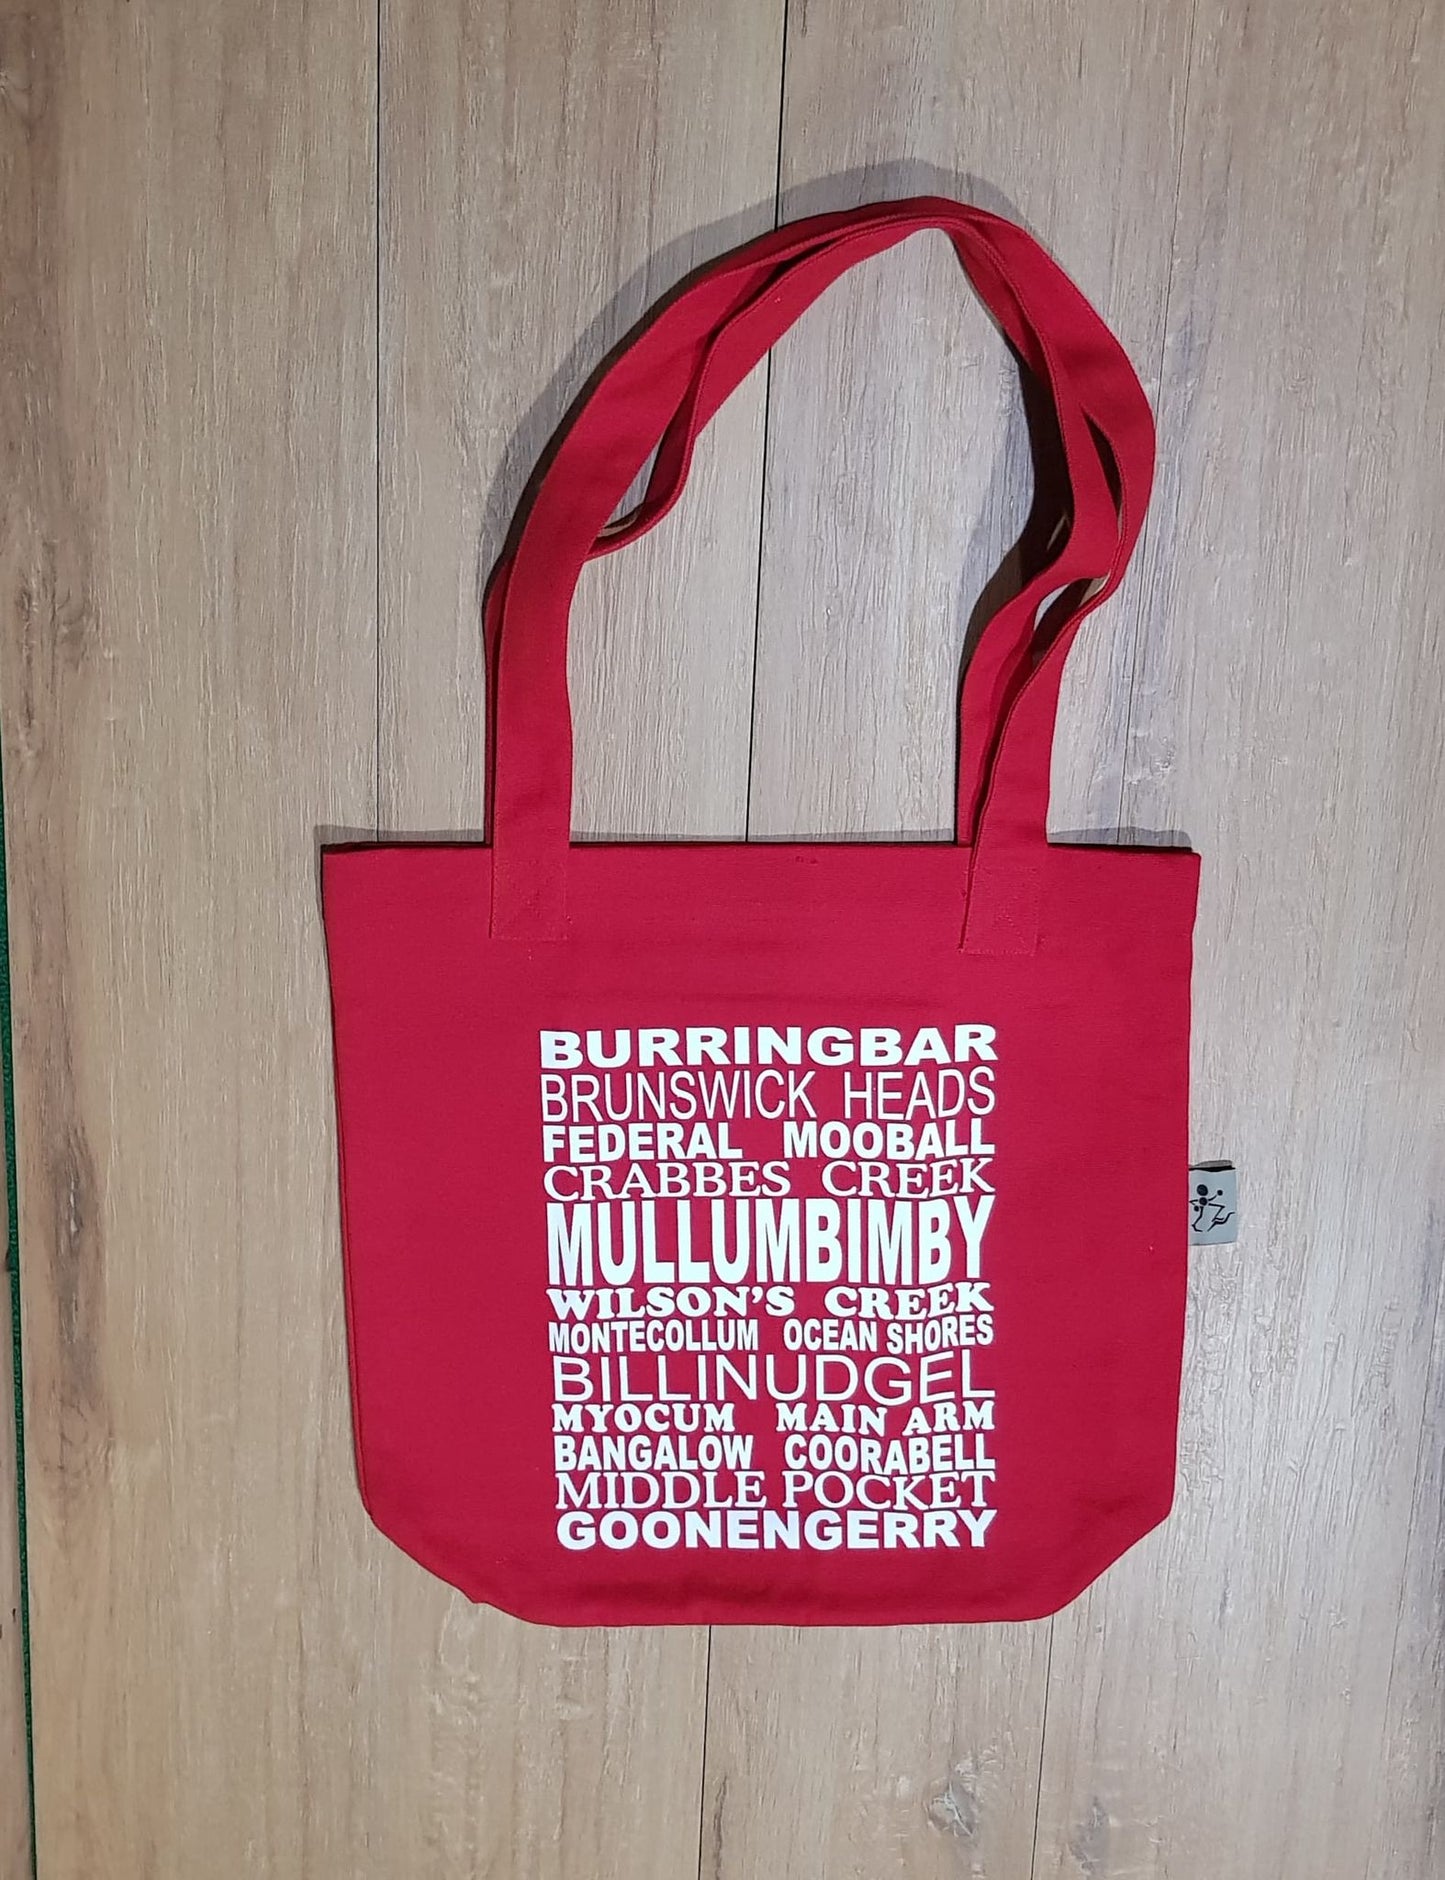 Mullumbimby Souvenir Bag